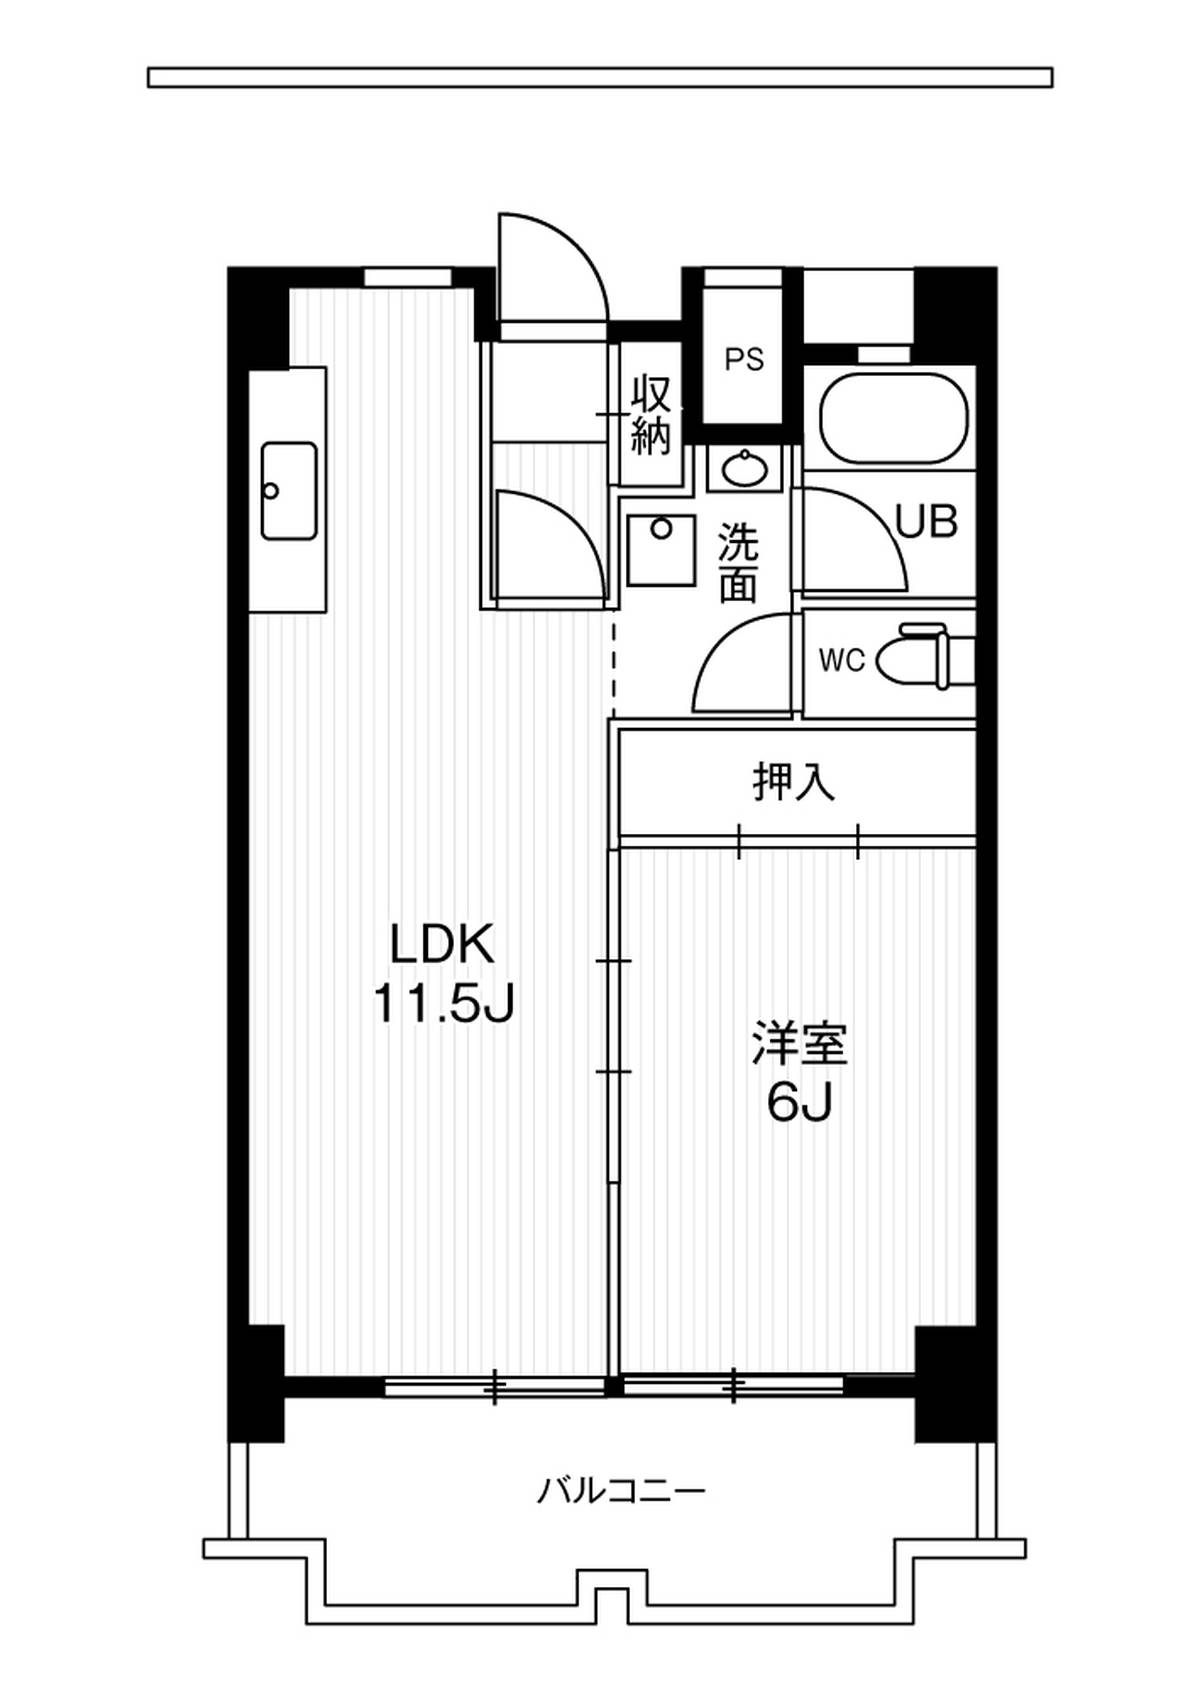 1LDK floorplan of Village House Ichinomiya Tower in Ichinomiya-shi